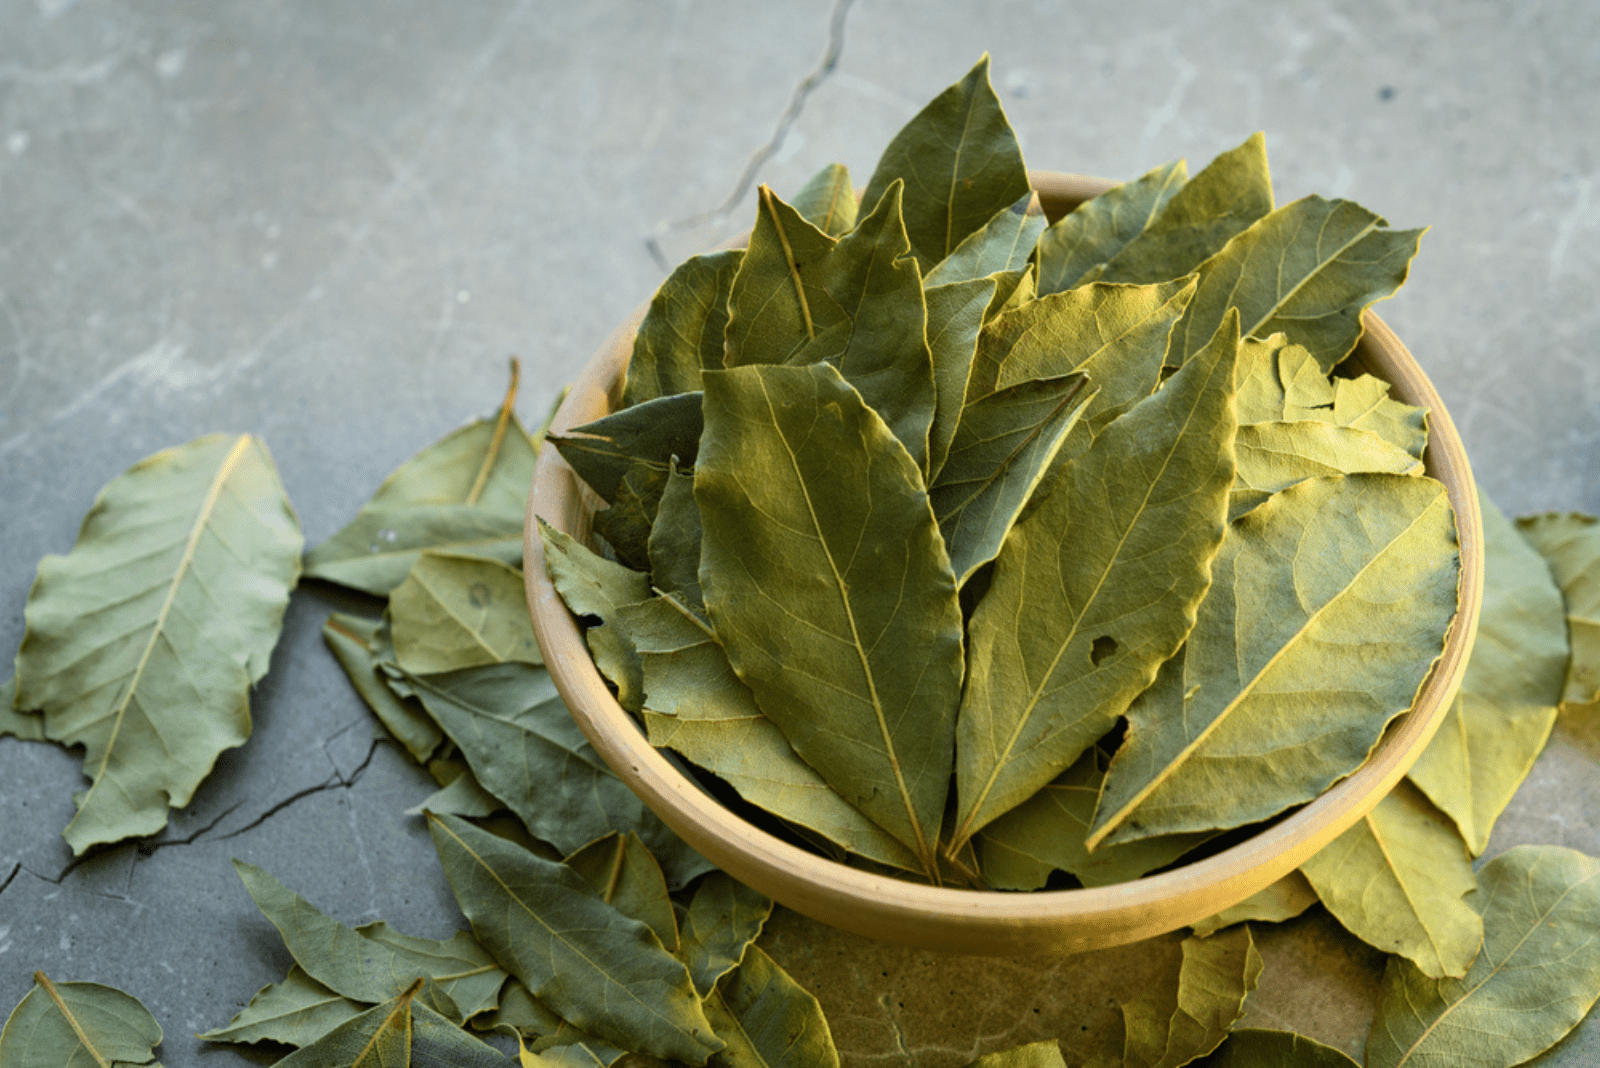 Bay leaf in a bowl